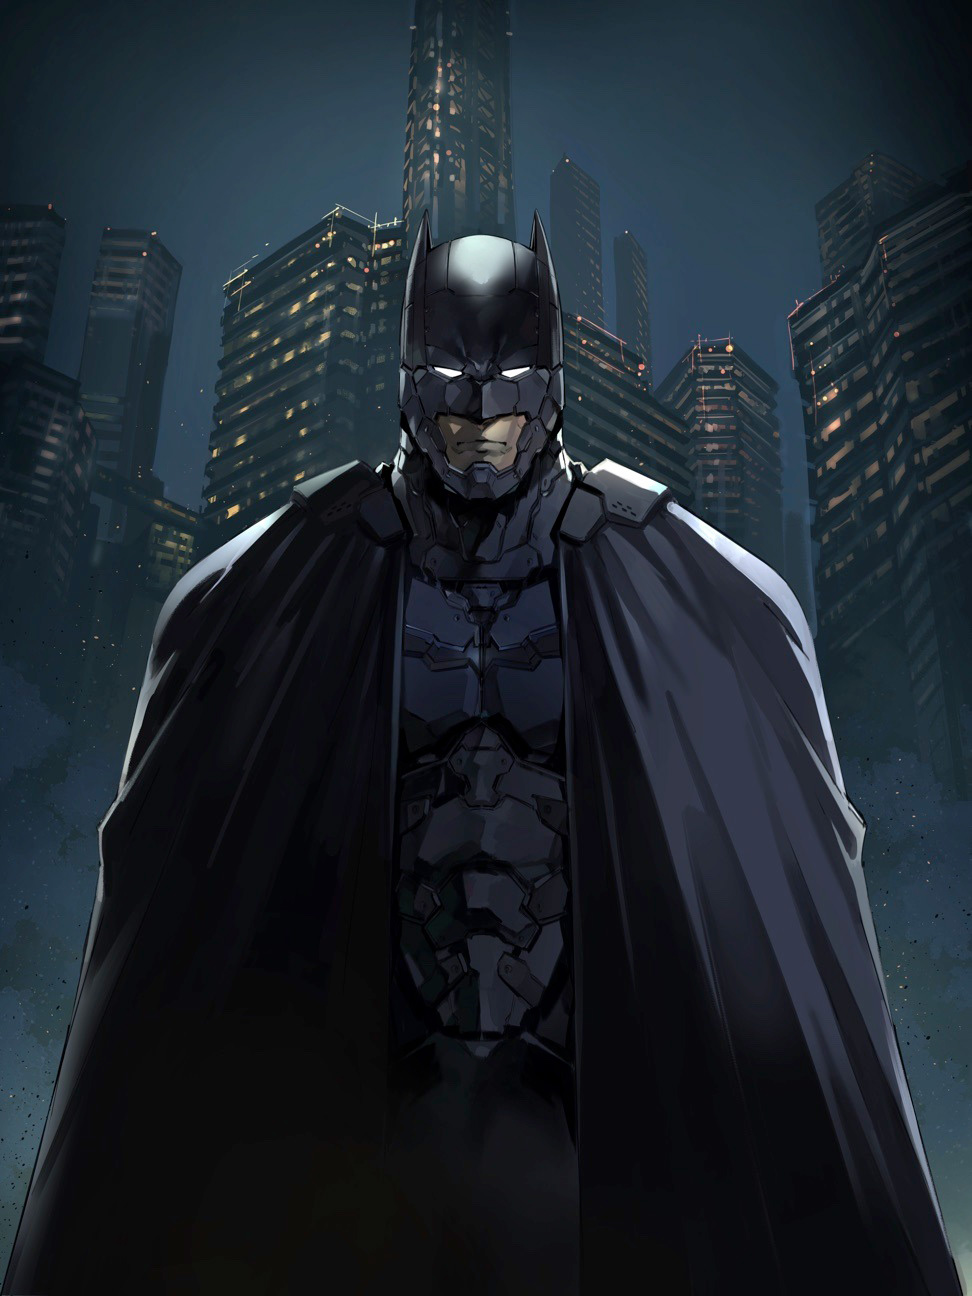 特報 モーニングにバットマン ジョーカー降臨 Dc モーニングの共同プロジェクト開幕 第1弾は Batman Justice Buster ワンオペjoker の2作品 モーニング公式サイト 講談社の青年漫画誌